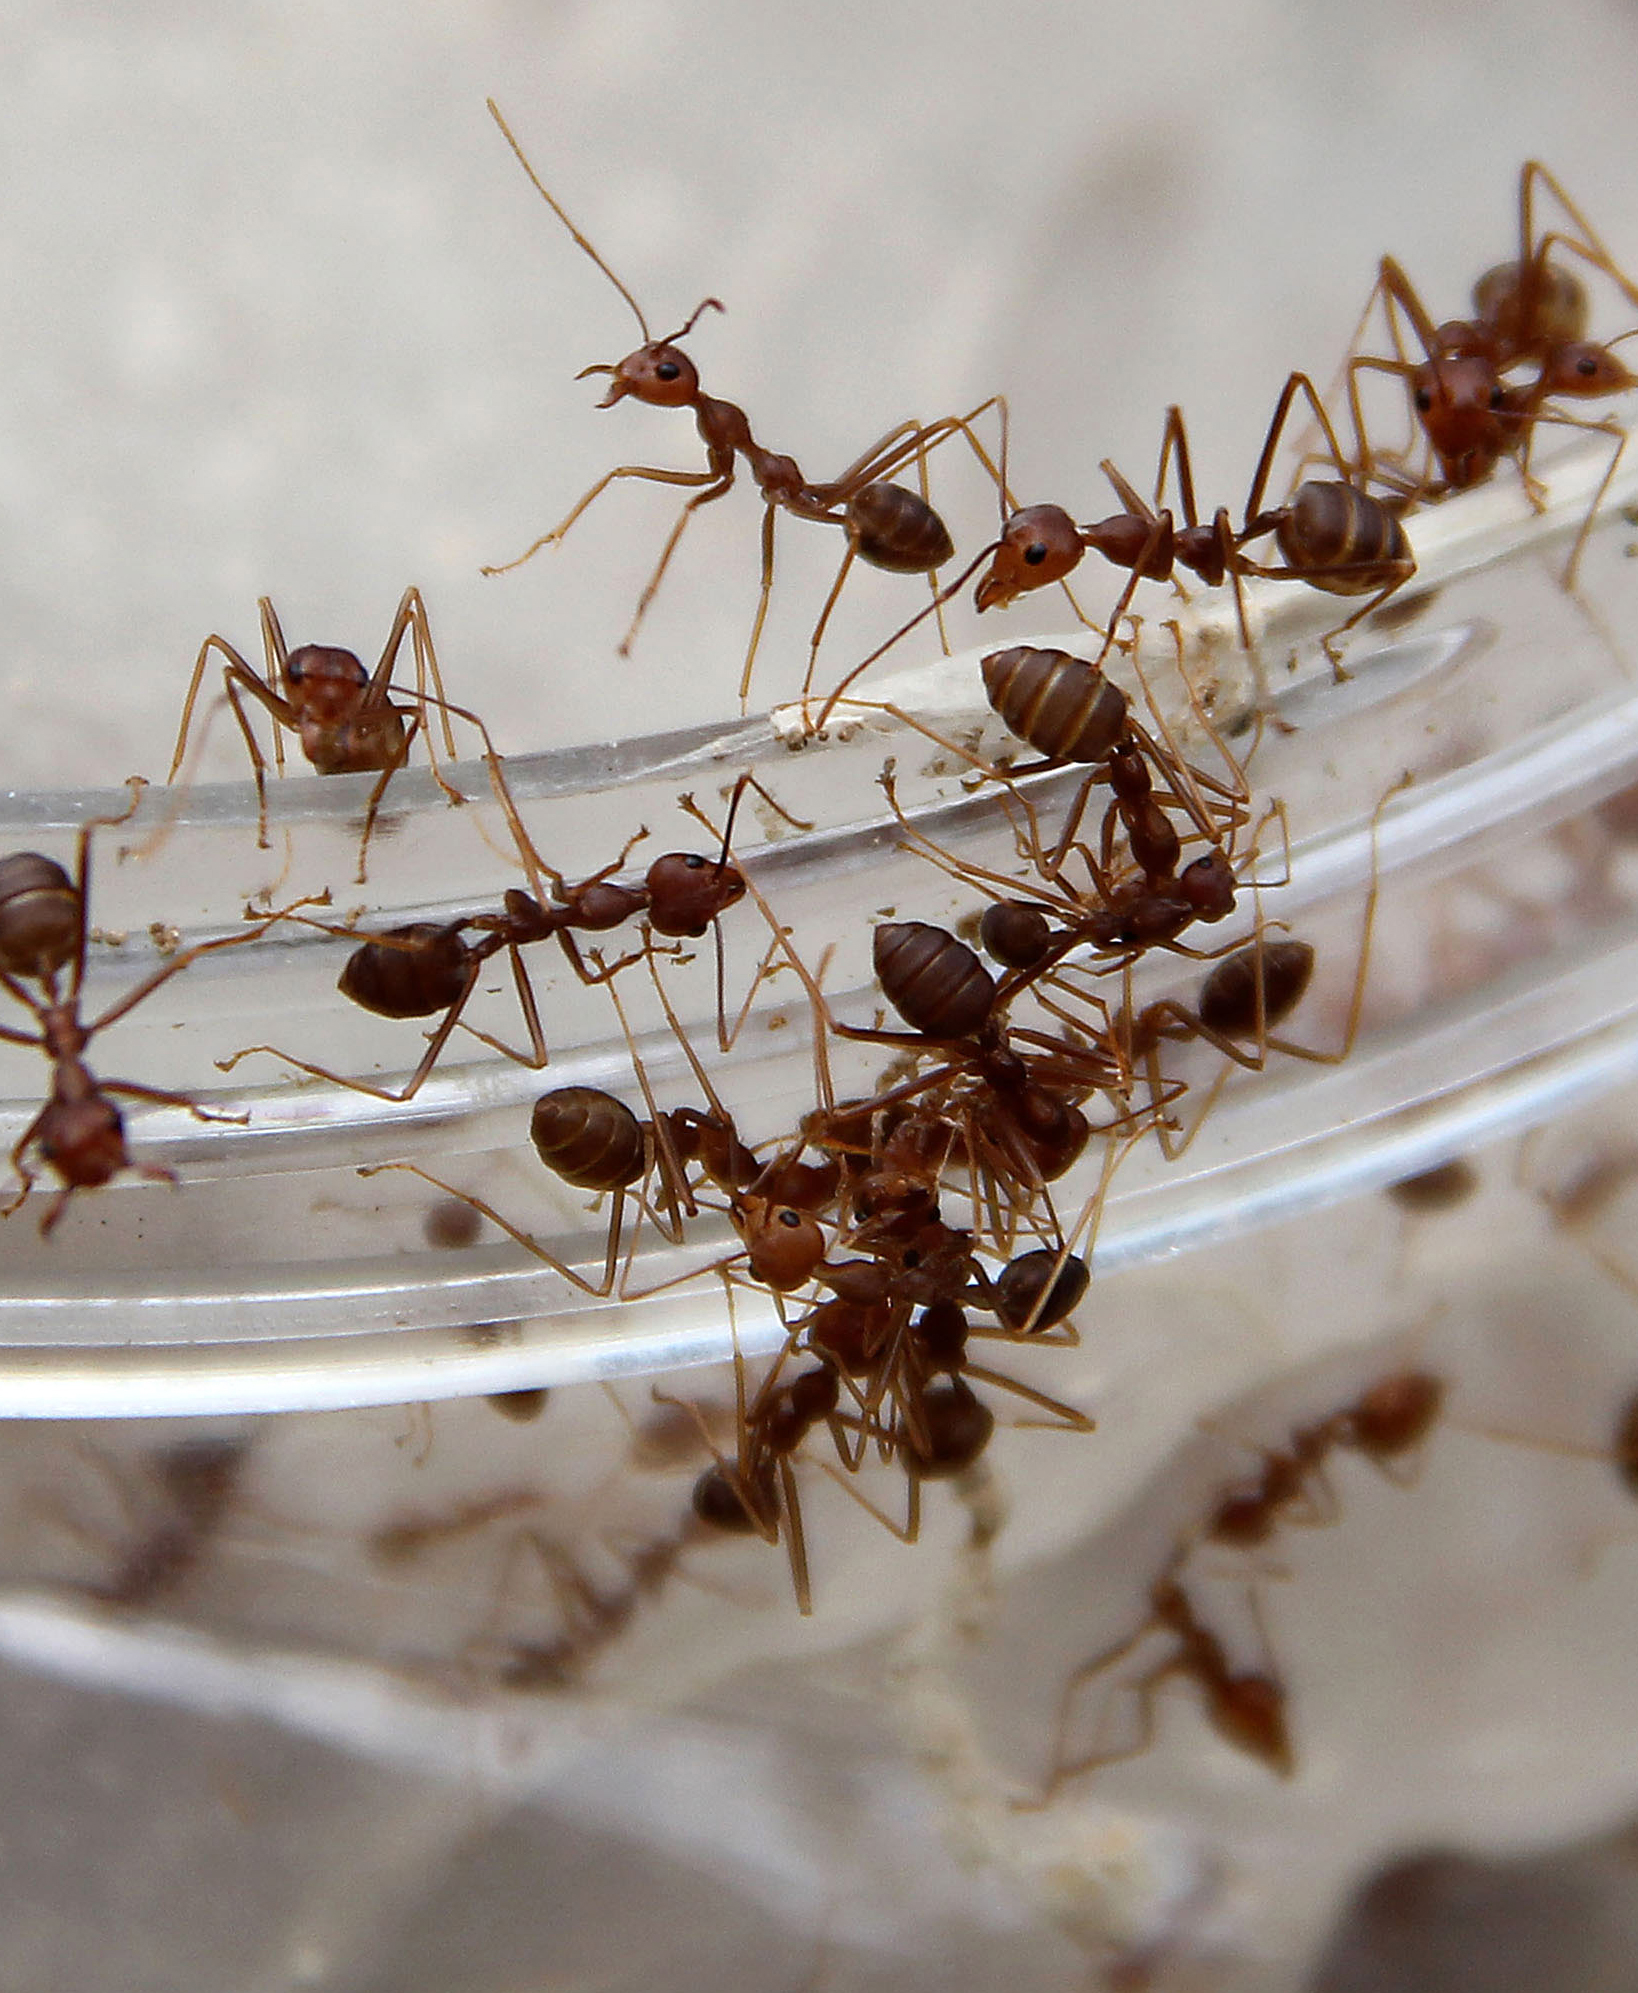 Garden Plot: Ants in your pants